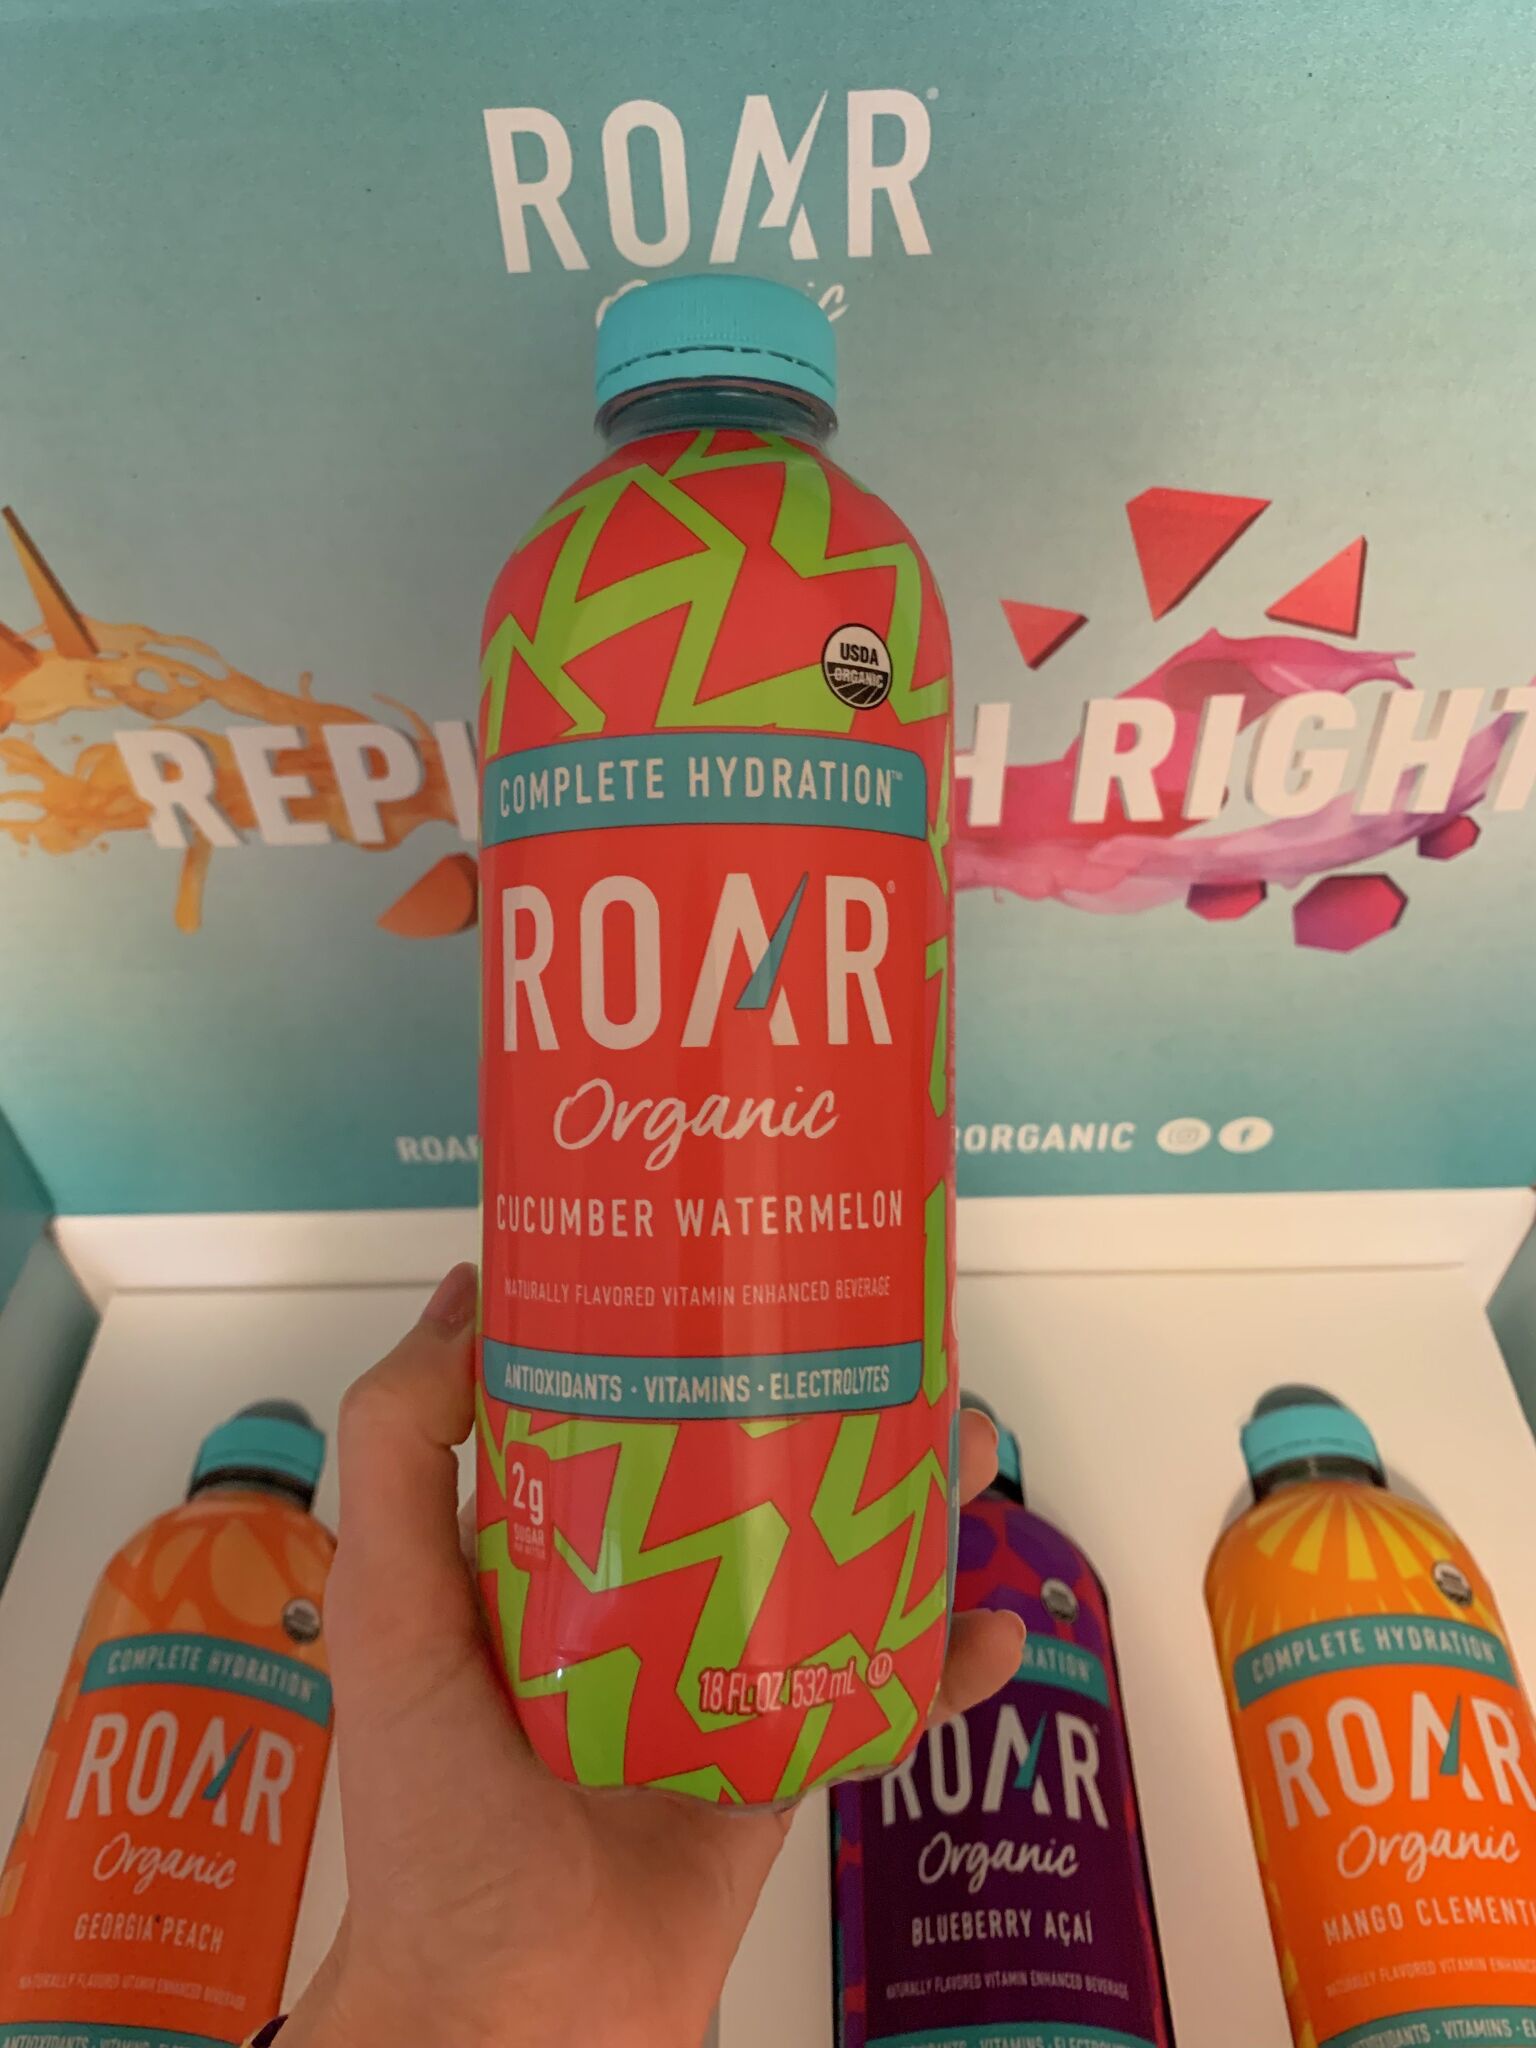 Roar Organic Georgia Peach Beverage, 18 fl oz